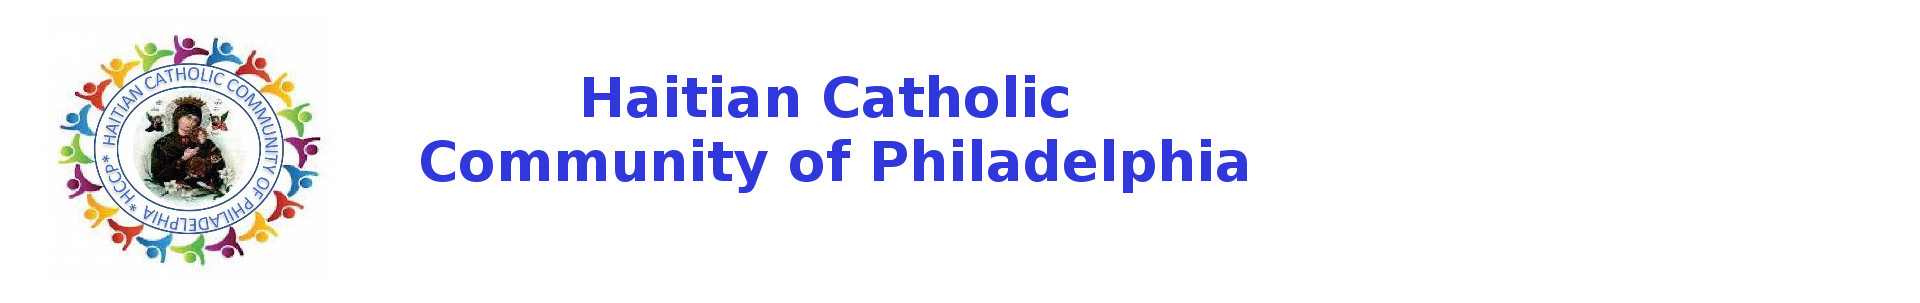 Haitian Catholic Community of Philadelphia